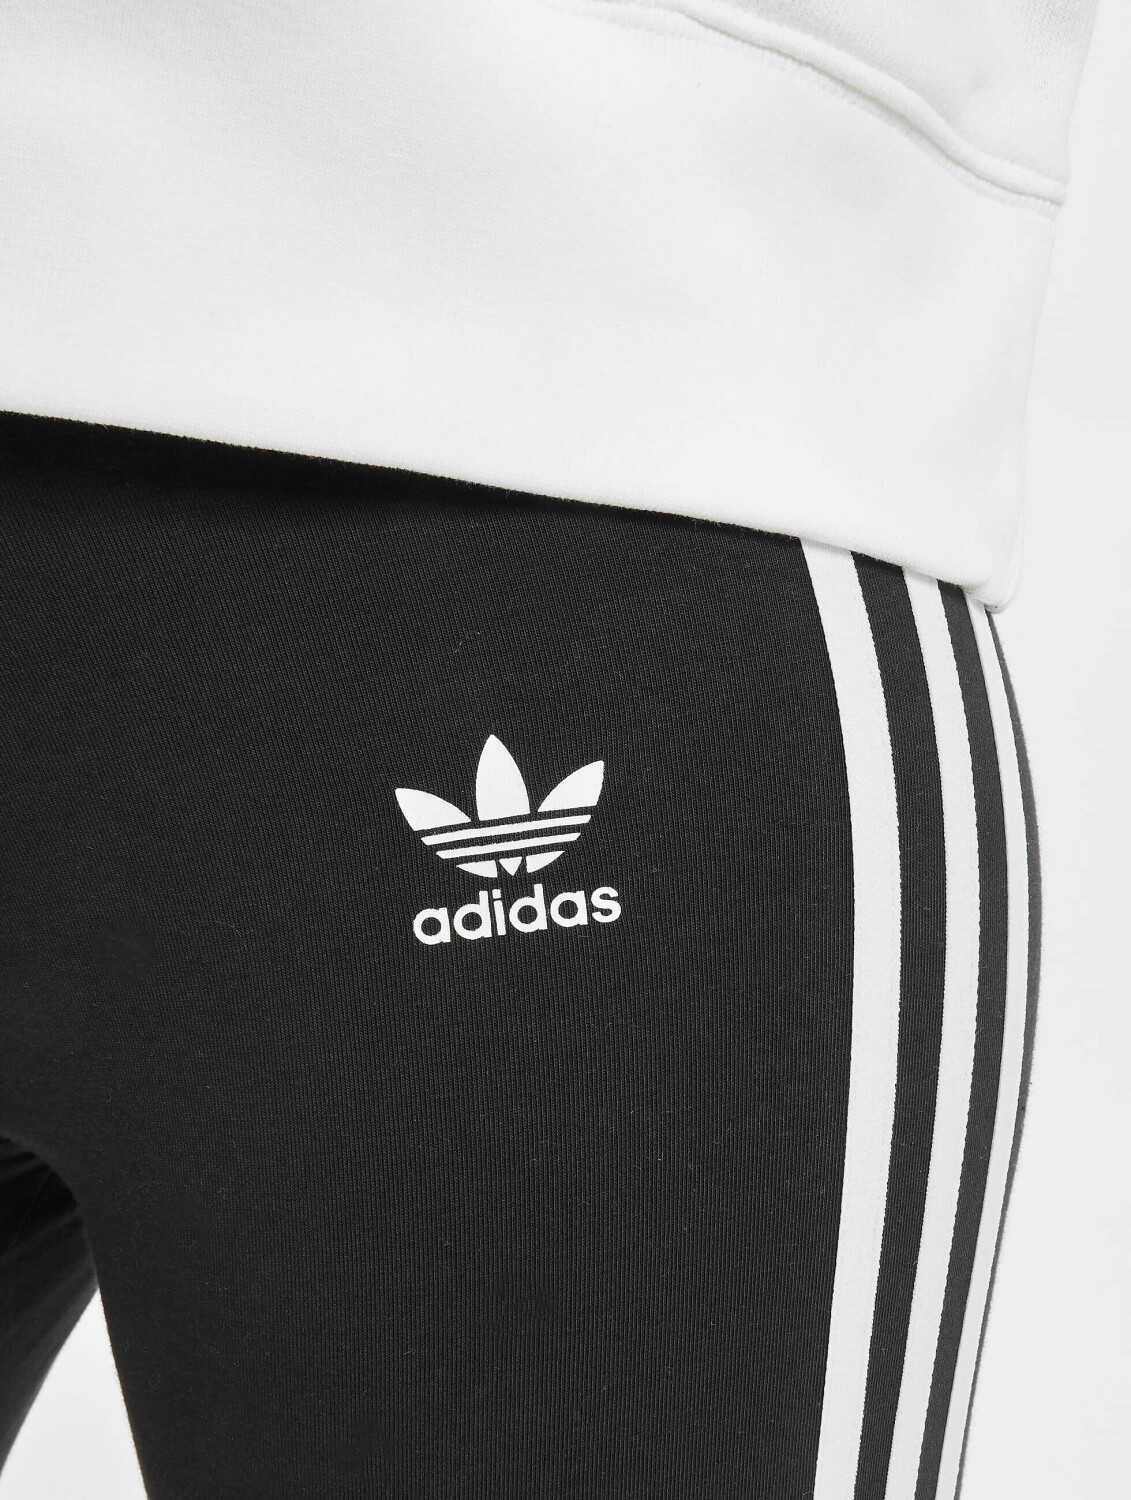 22,46 € Classics 3-Stripes | Leggings Adicolor black Preisvergleich ab Adidas bei